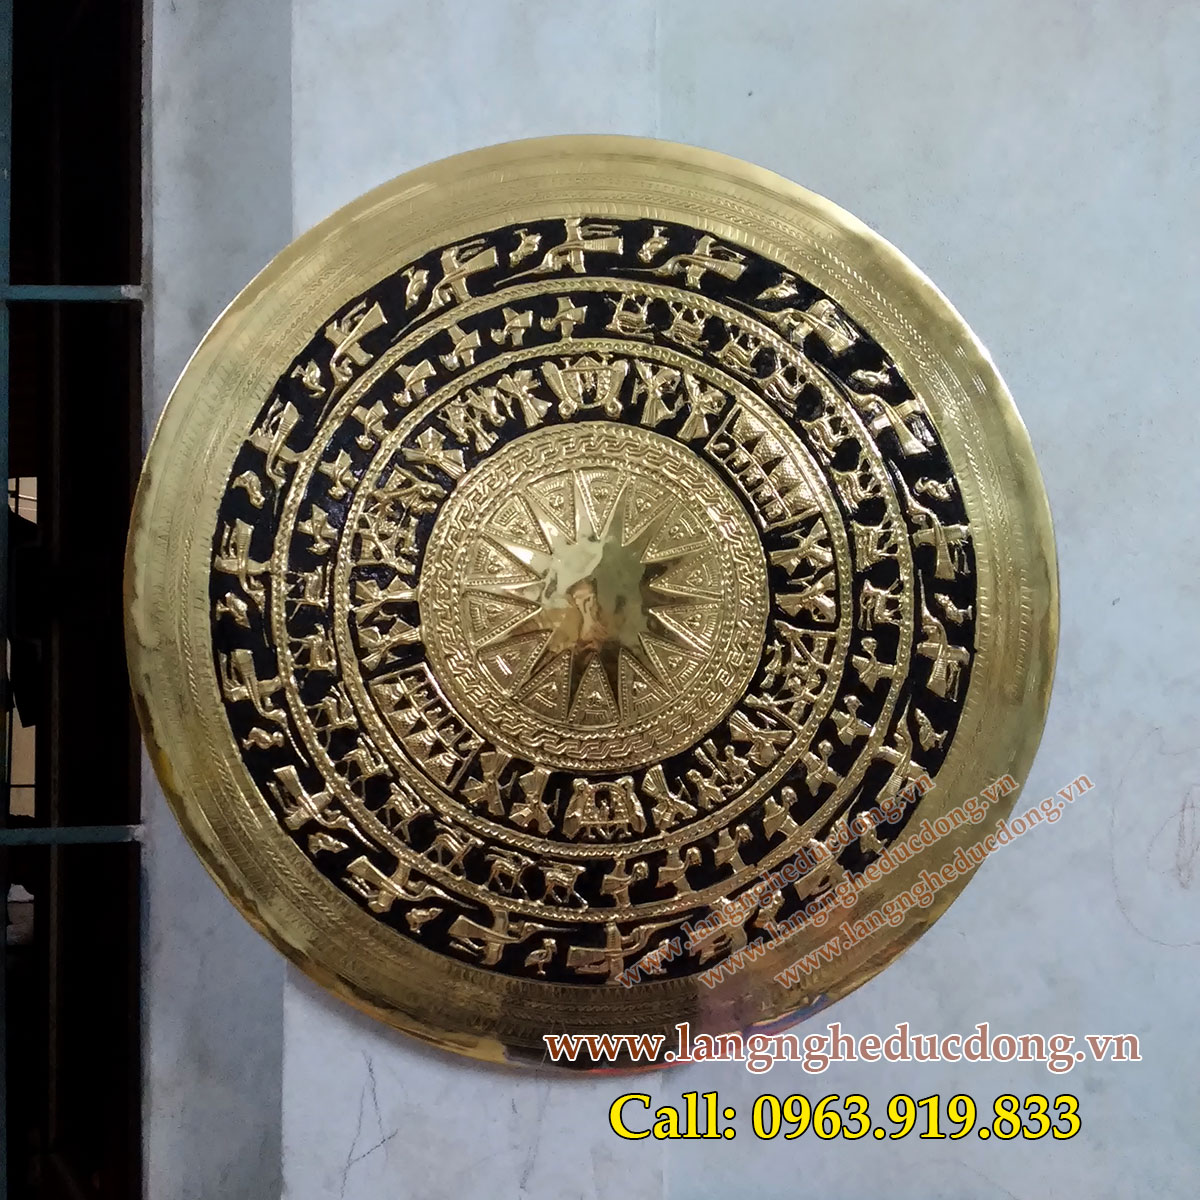 langnghedudong.vn - mặt trống đồng gò nổi, mặt trống đồng DK 60cm